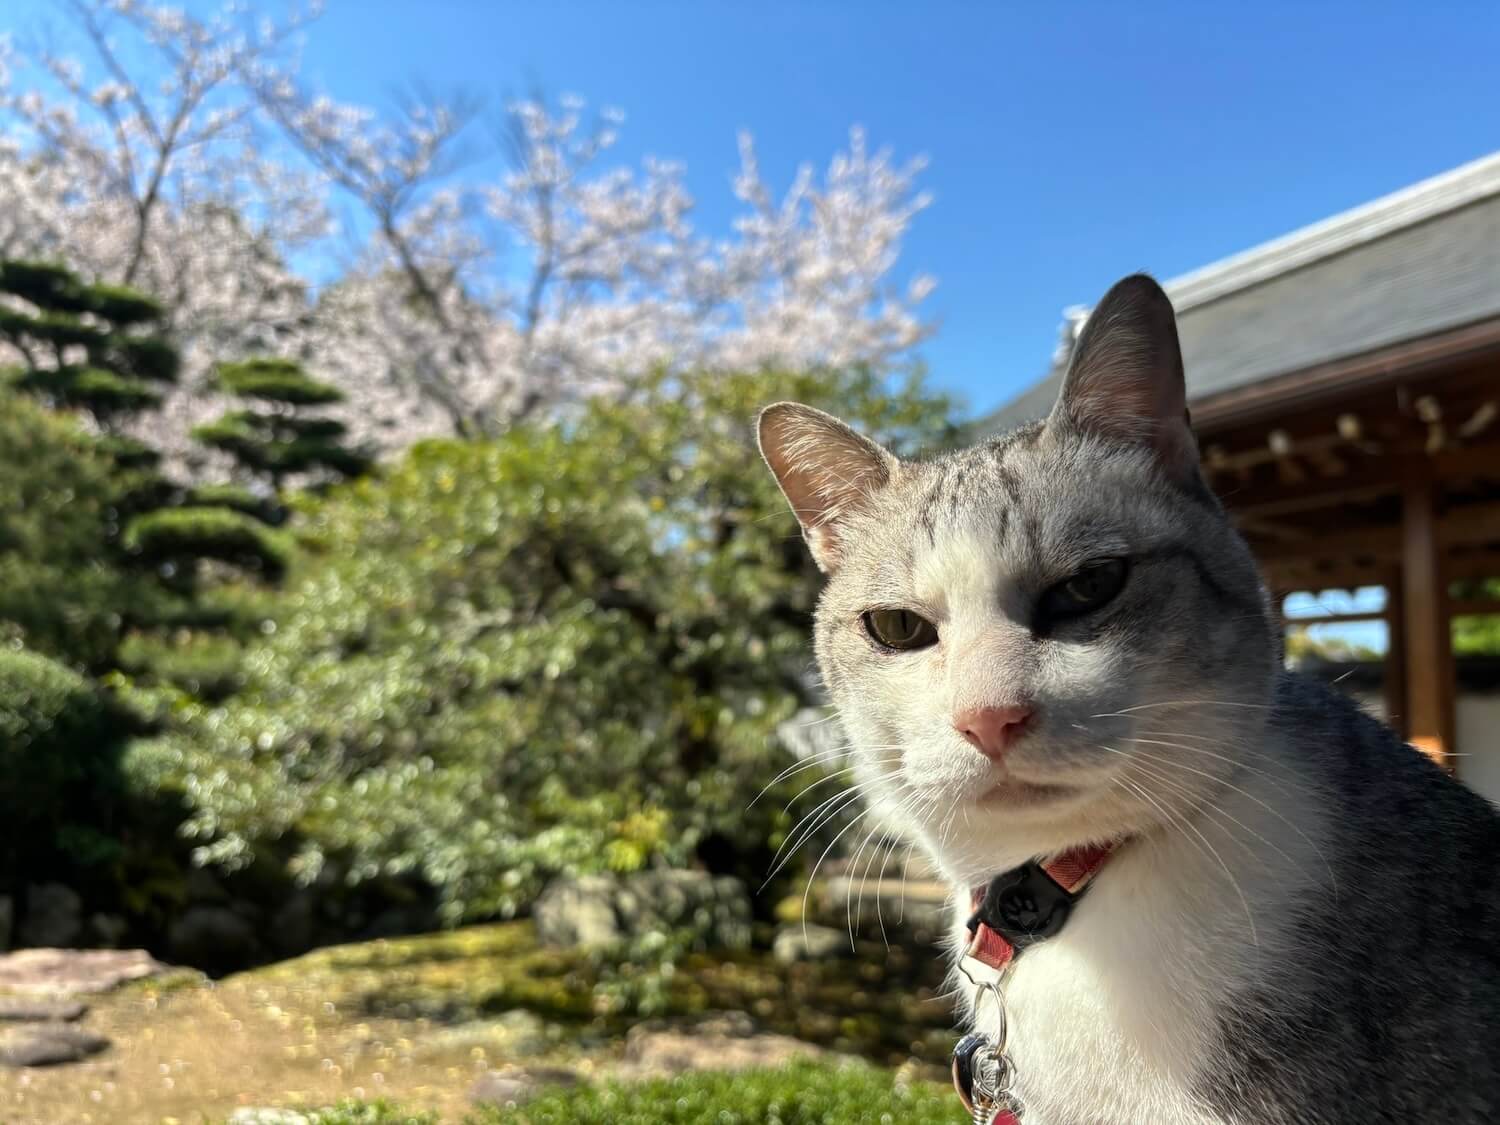 壽聖院で日向ぼっこをする看板猫の「彼岸」くん